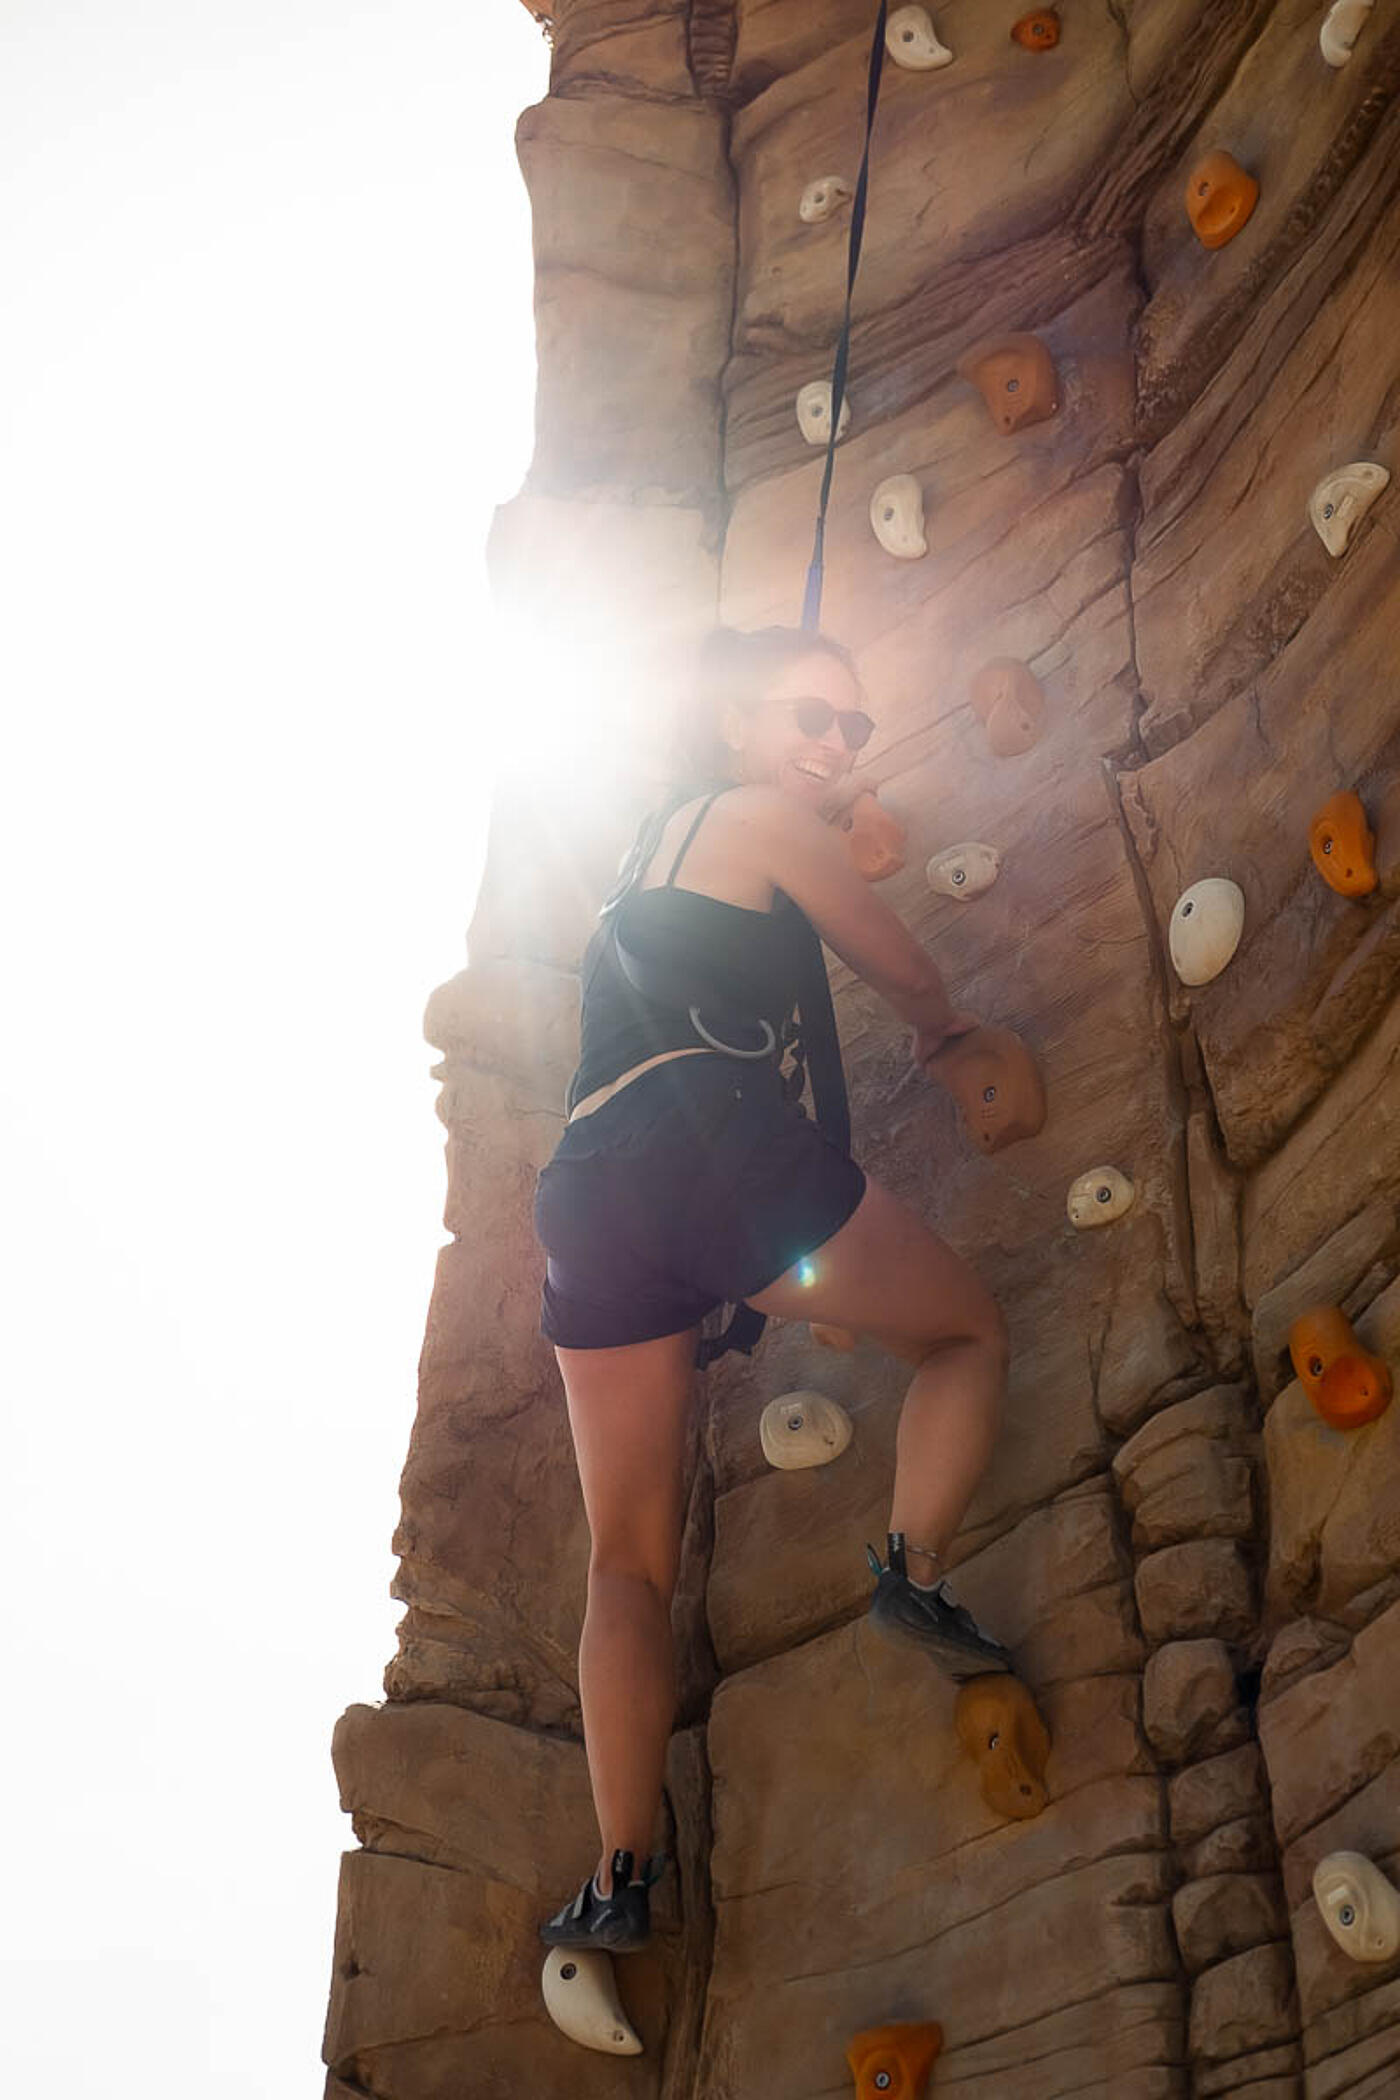 Eine Mitarbeiterin von visuellverstehen klettert lachend eine Boulderwand hinauf.